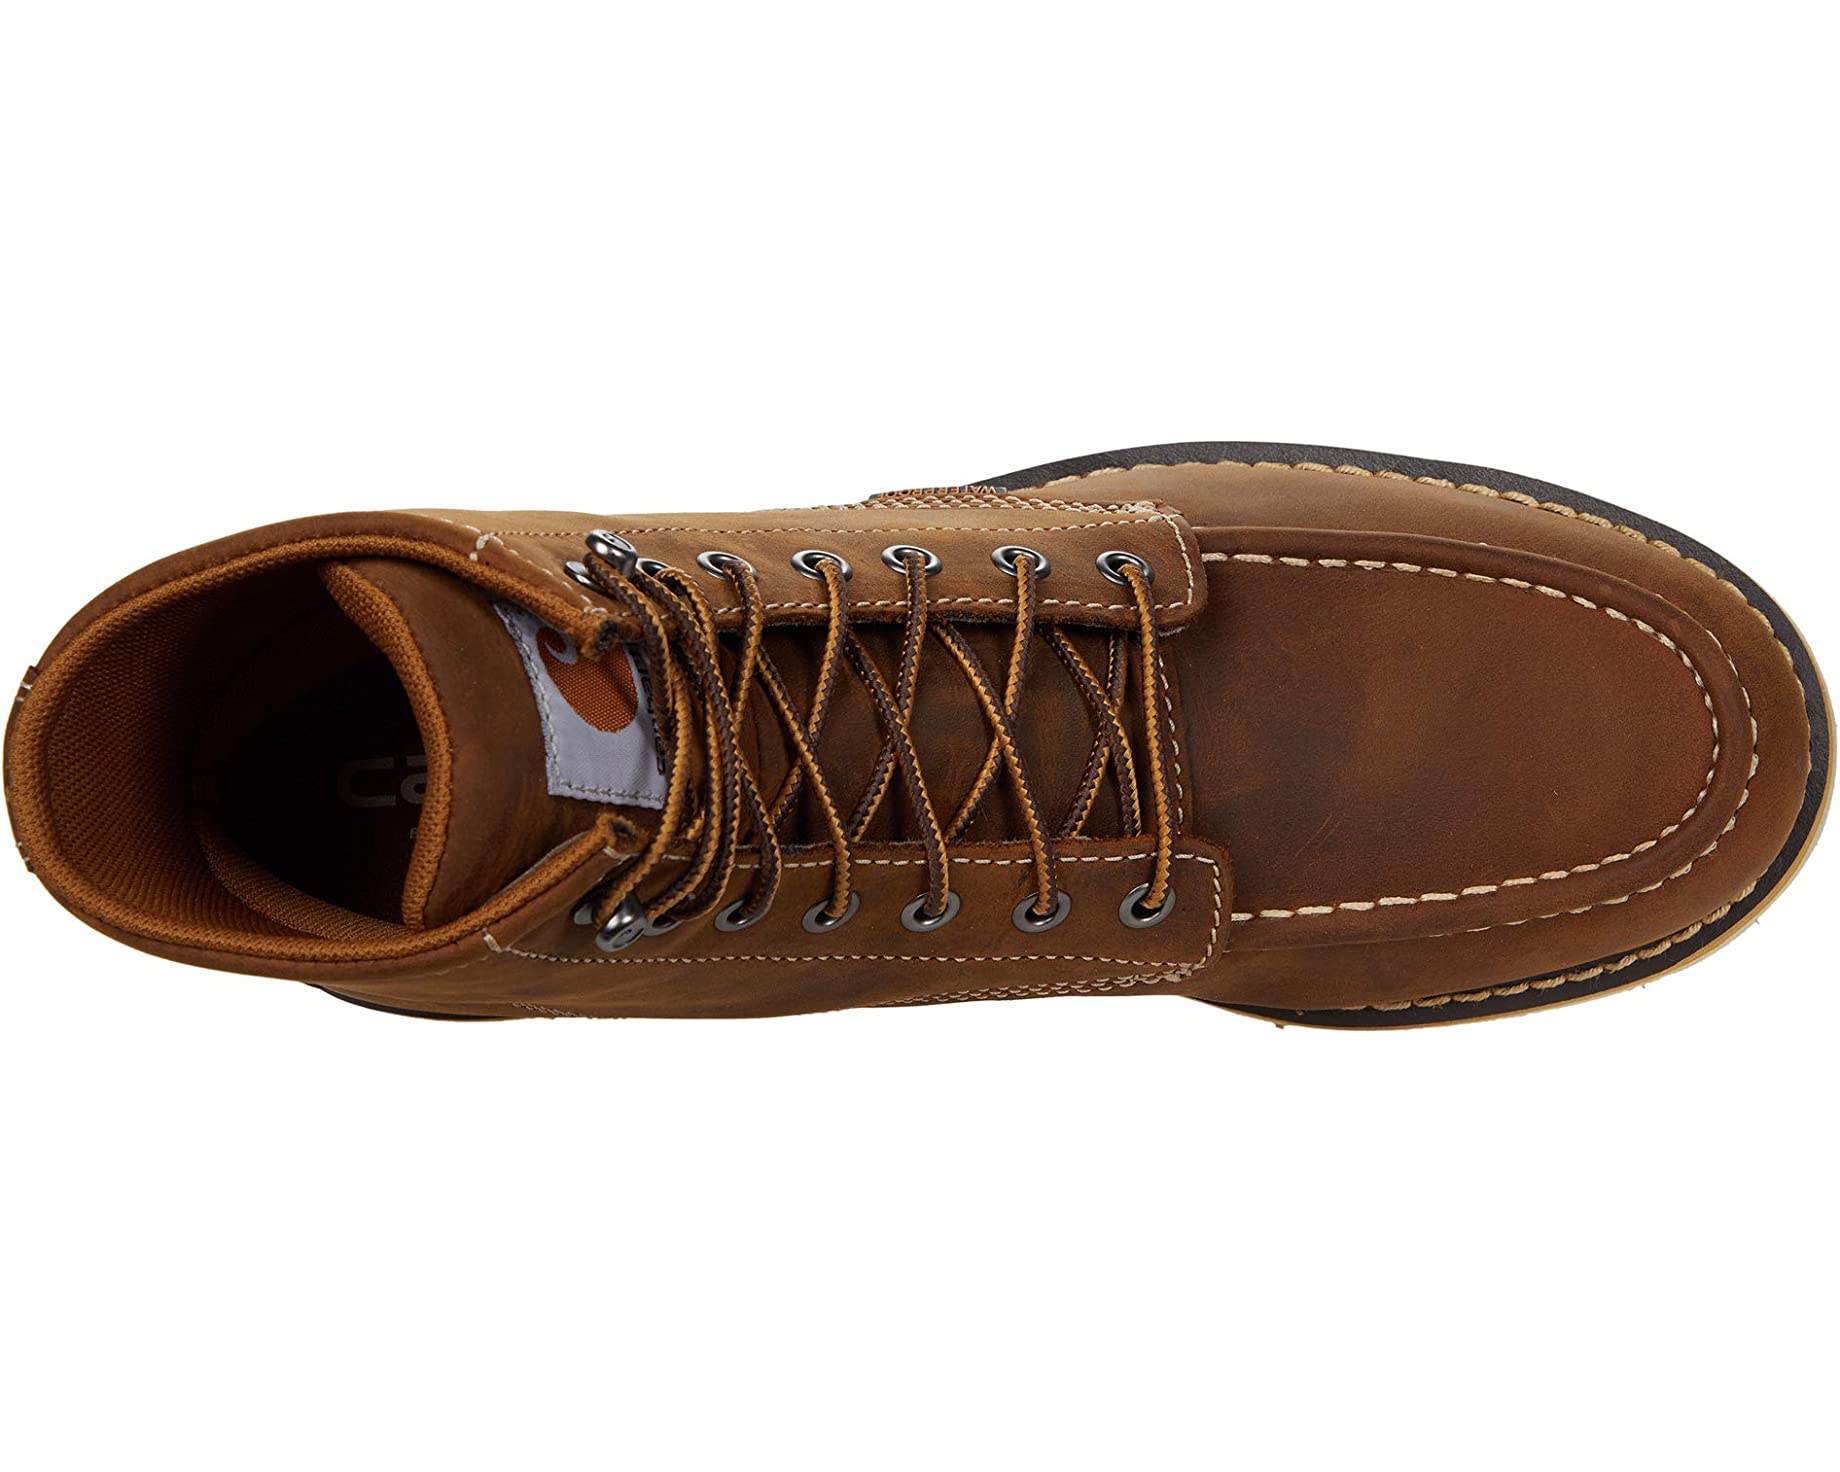 Ботинки Wedge 6 Waterproof Steel Toe Carhartt, коричневый ботинки мужские рабочие со стальным носком легкие защитные нескользящие дышащие кроссовки для строительства стальной носок